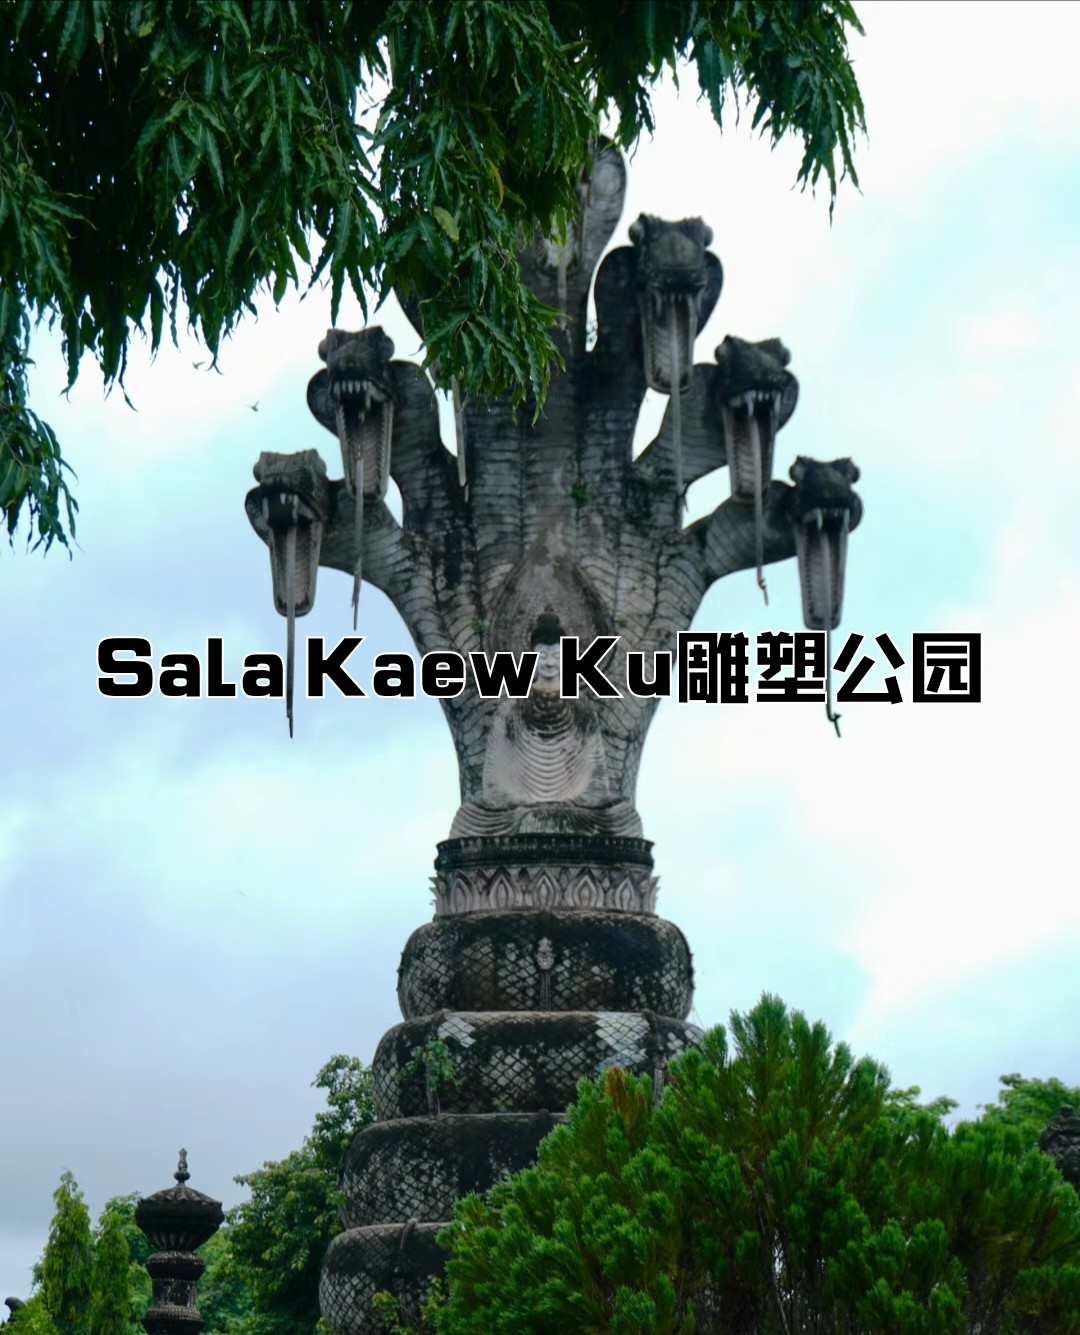 Sala Kaew Ku雕塑公园，也被称为萨拉鬼窟佛雕塑公园